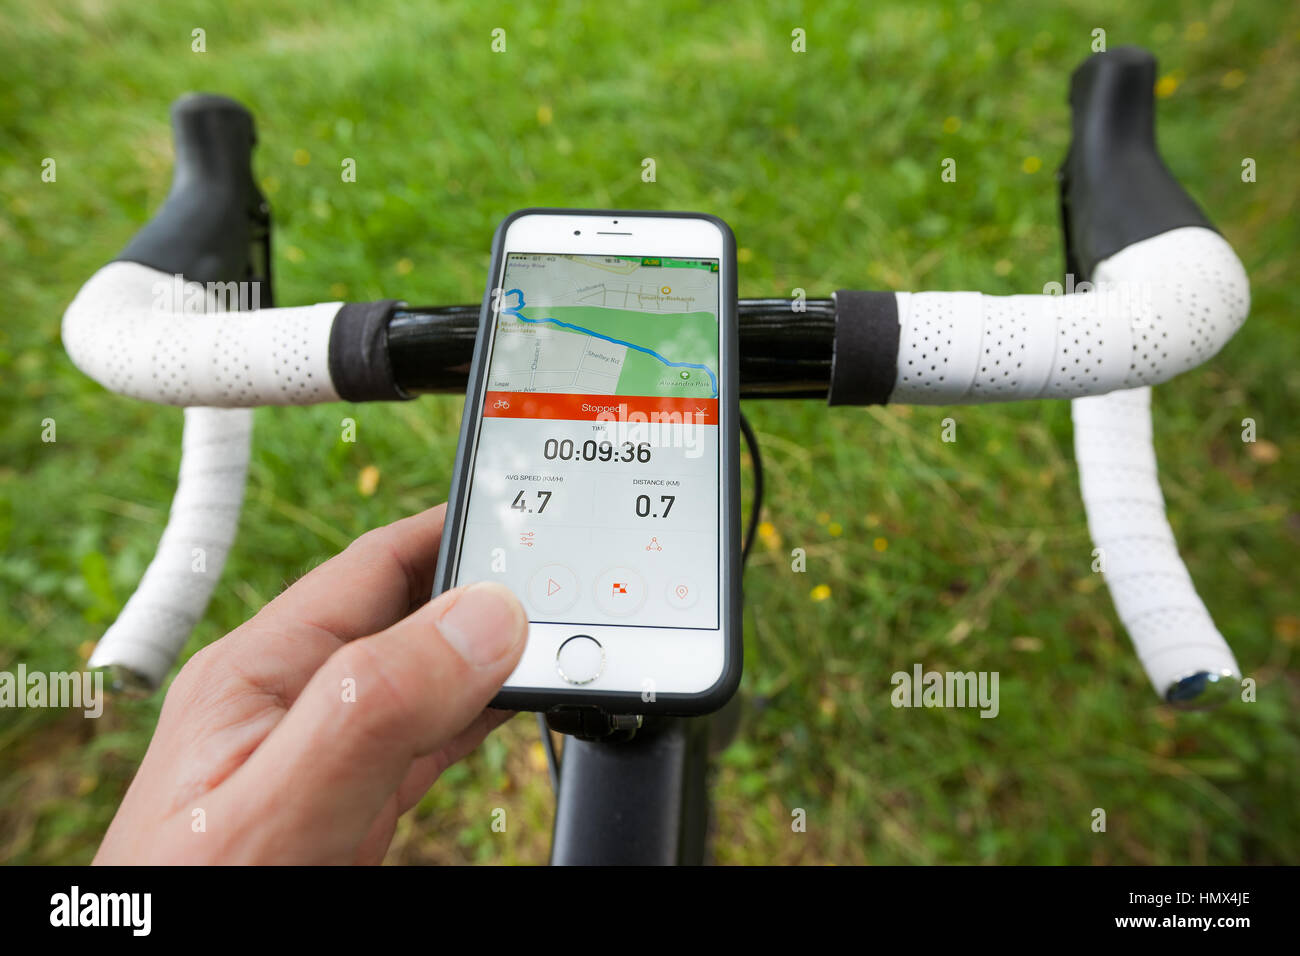 BATH, UK - 1. September 2015: Nahaufnahme eines Smartphones montiert auf den Lenker ein Rennrad in einem Park. Das Telefon zeigt die app Strava, Stockfoto